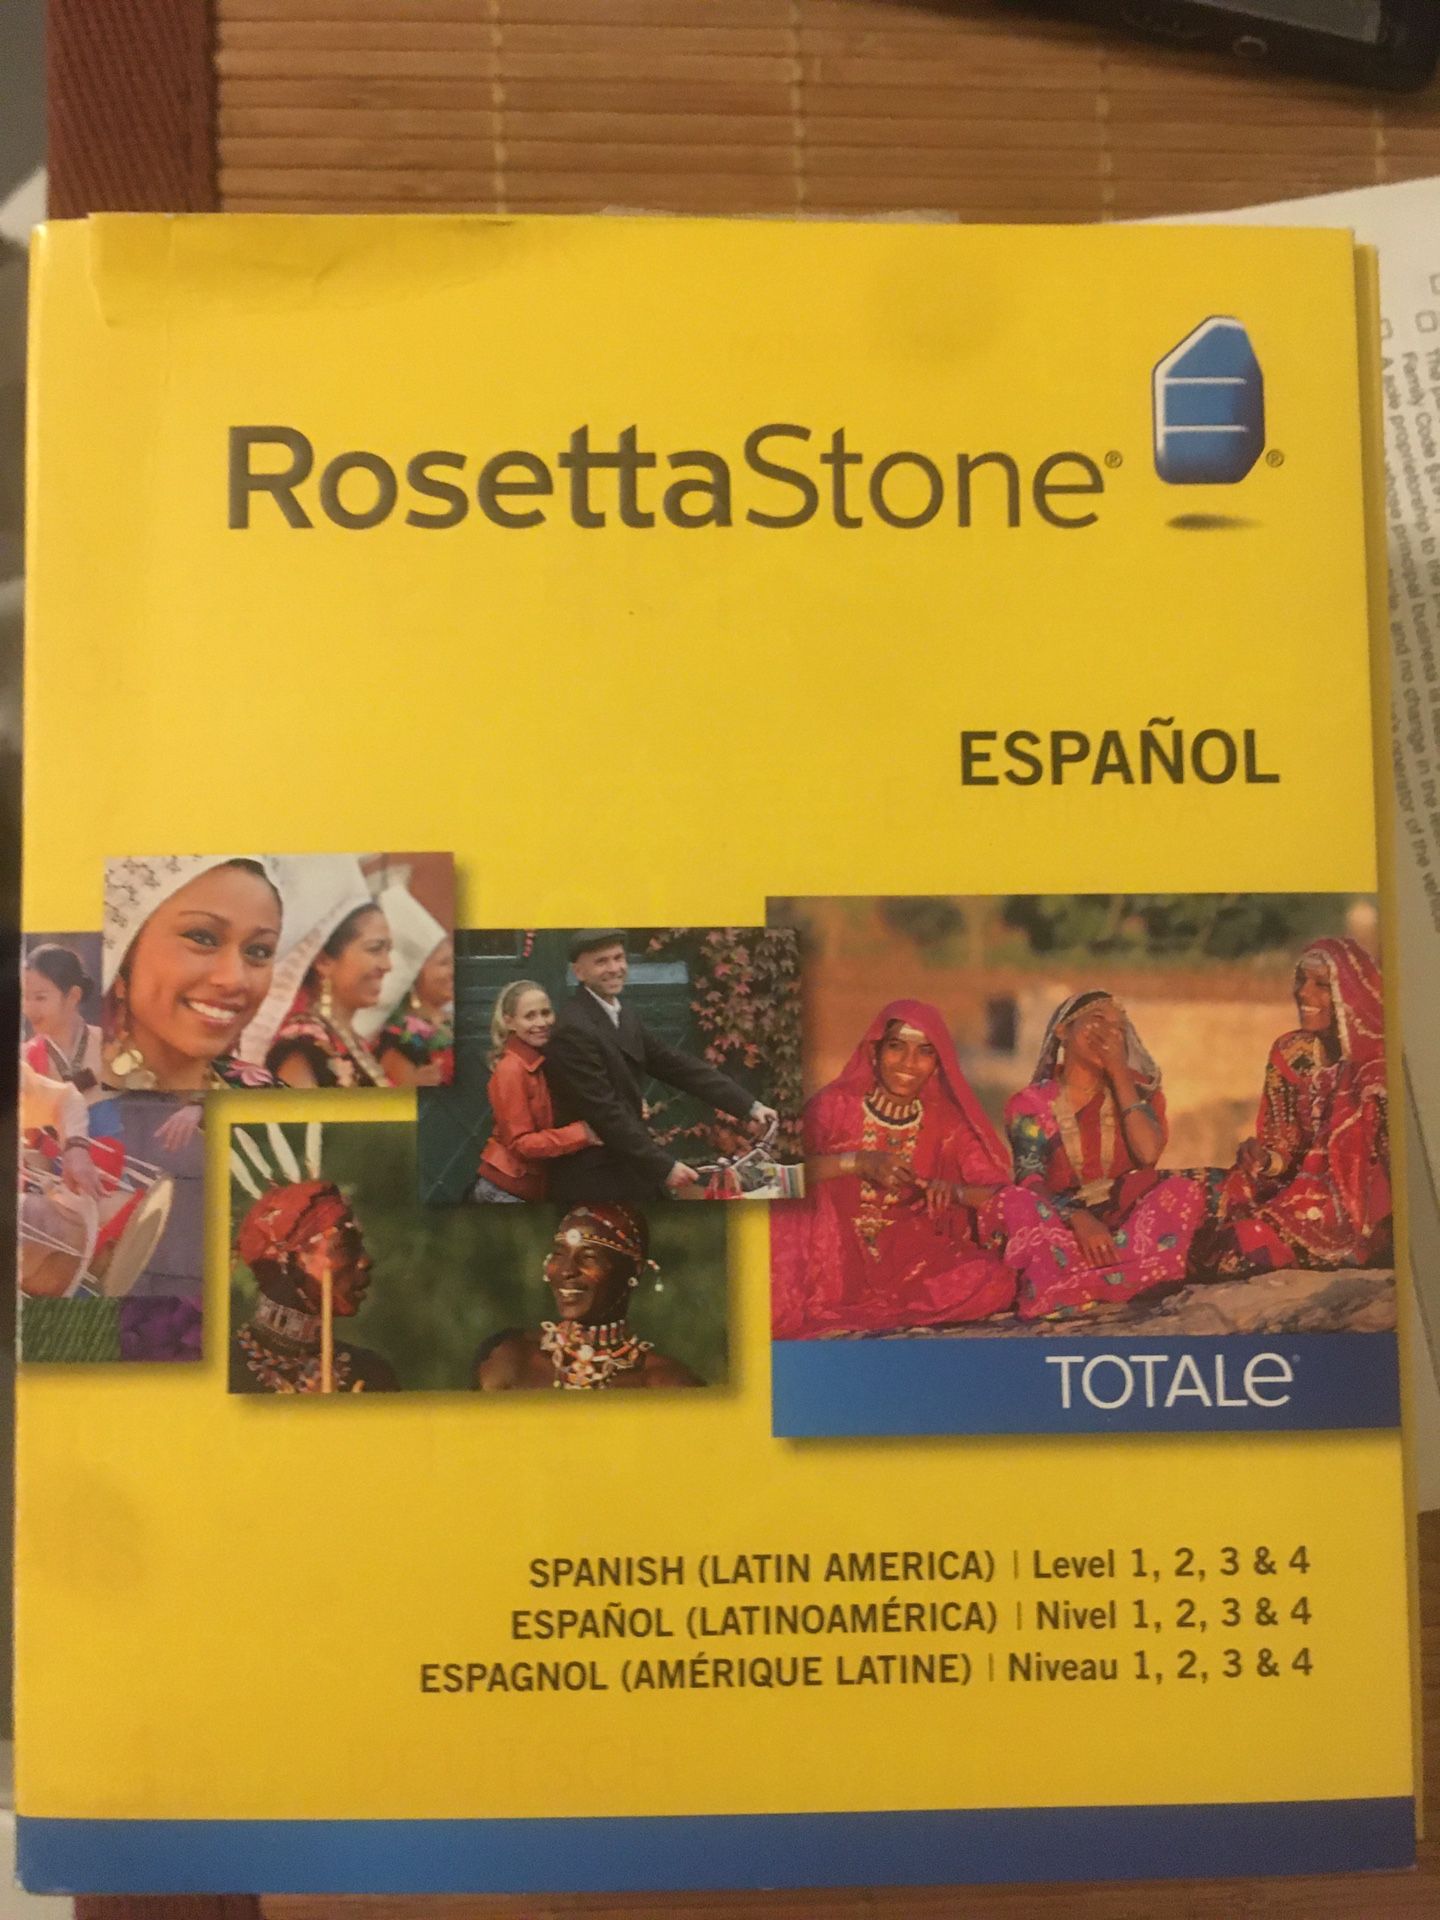 Rosetta Stone - Spanish version 4. New